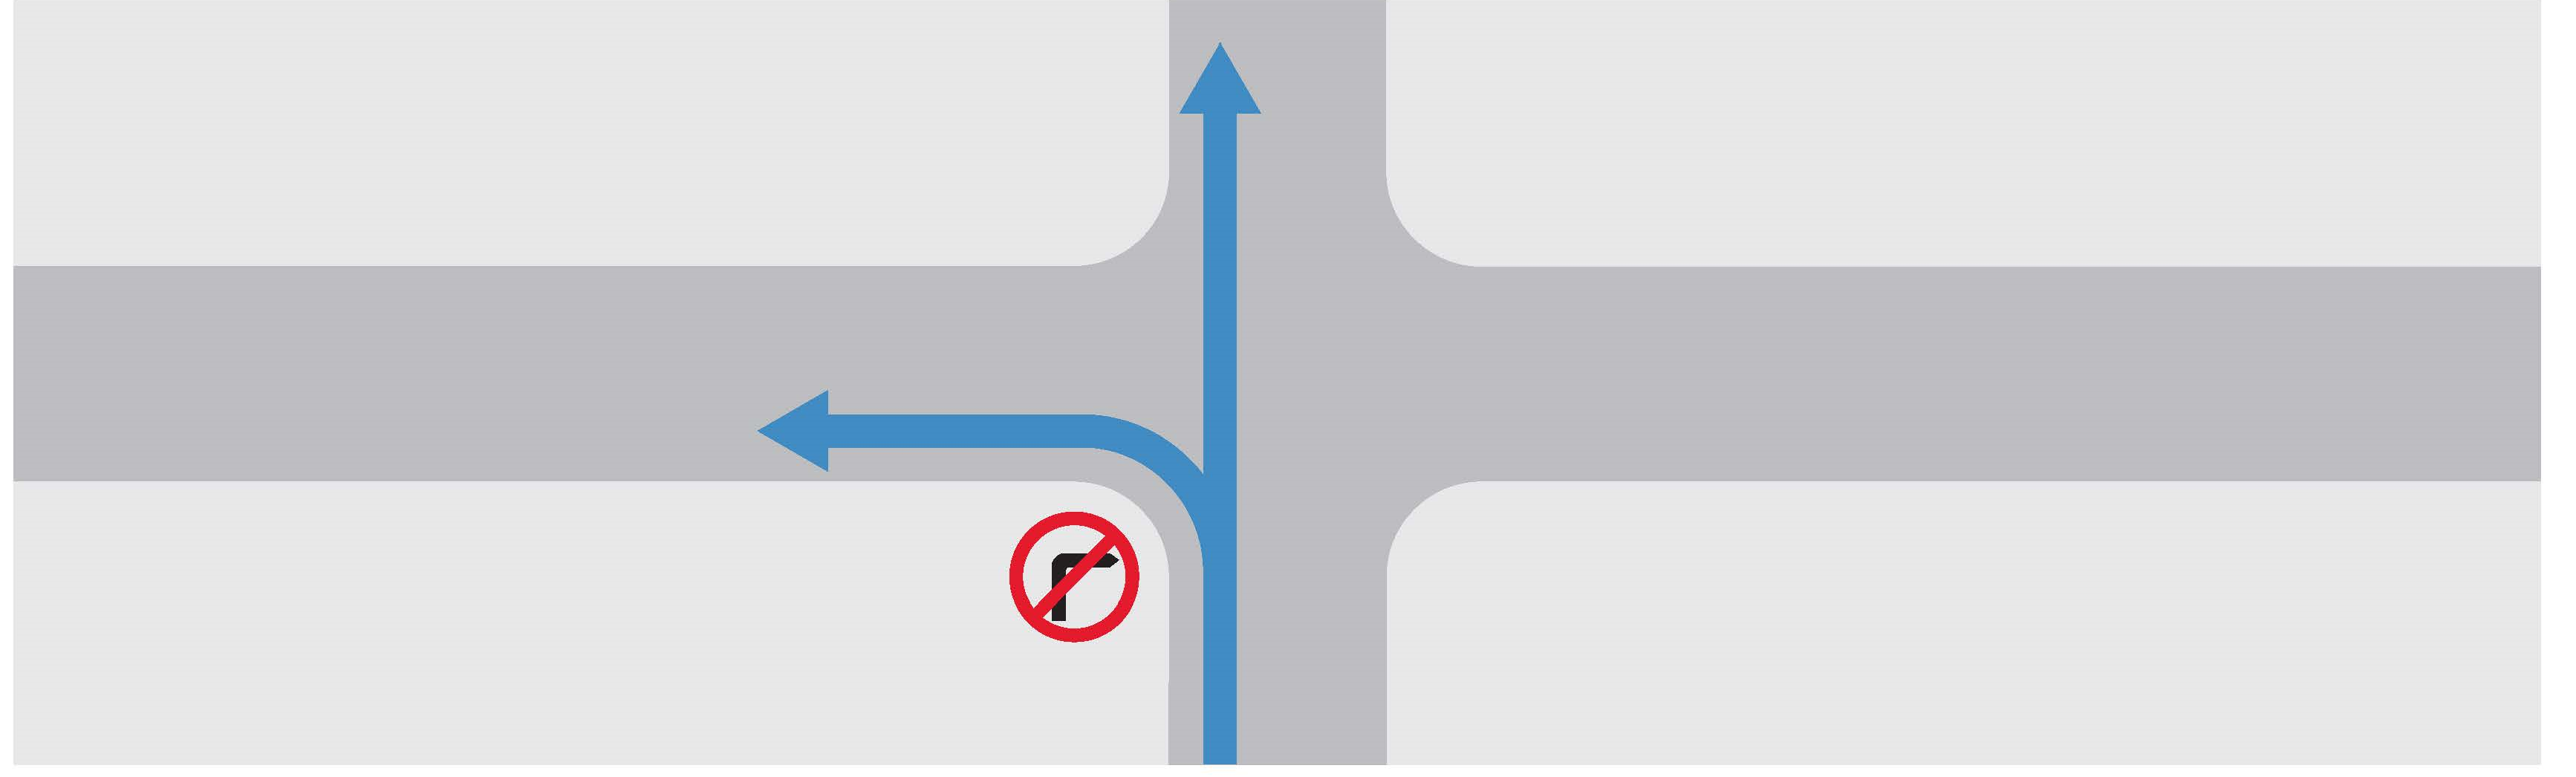 禁止轉右的路口示意圖